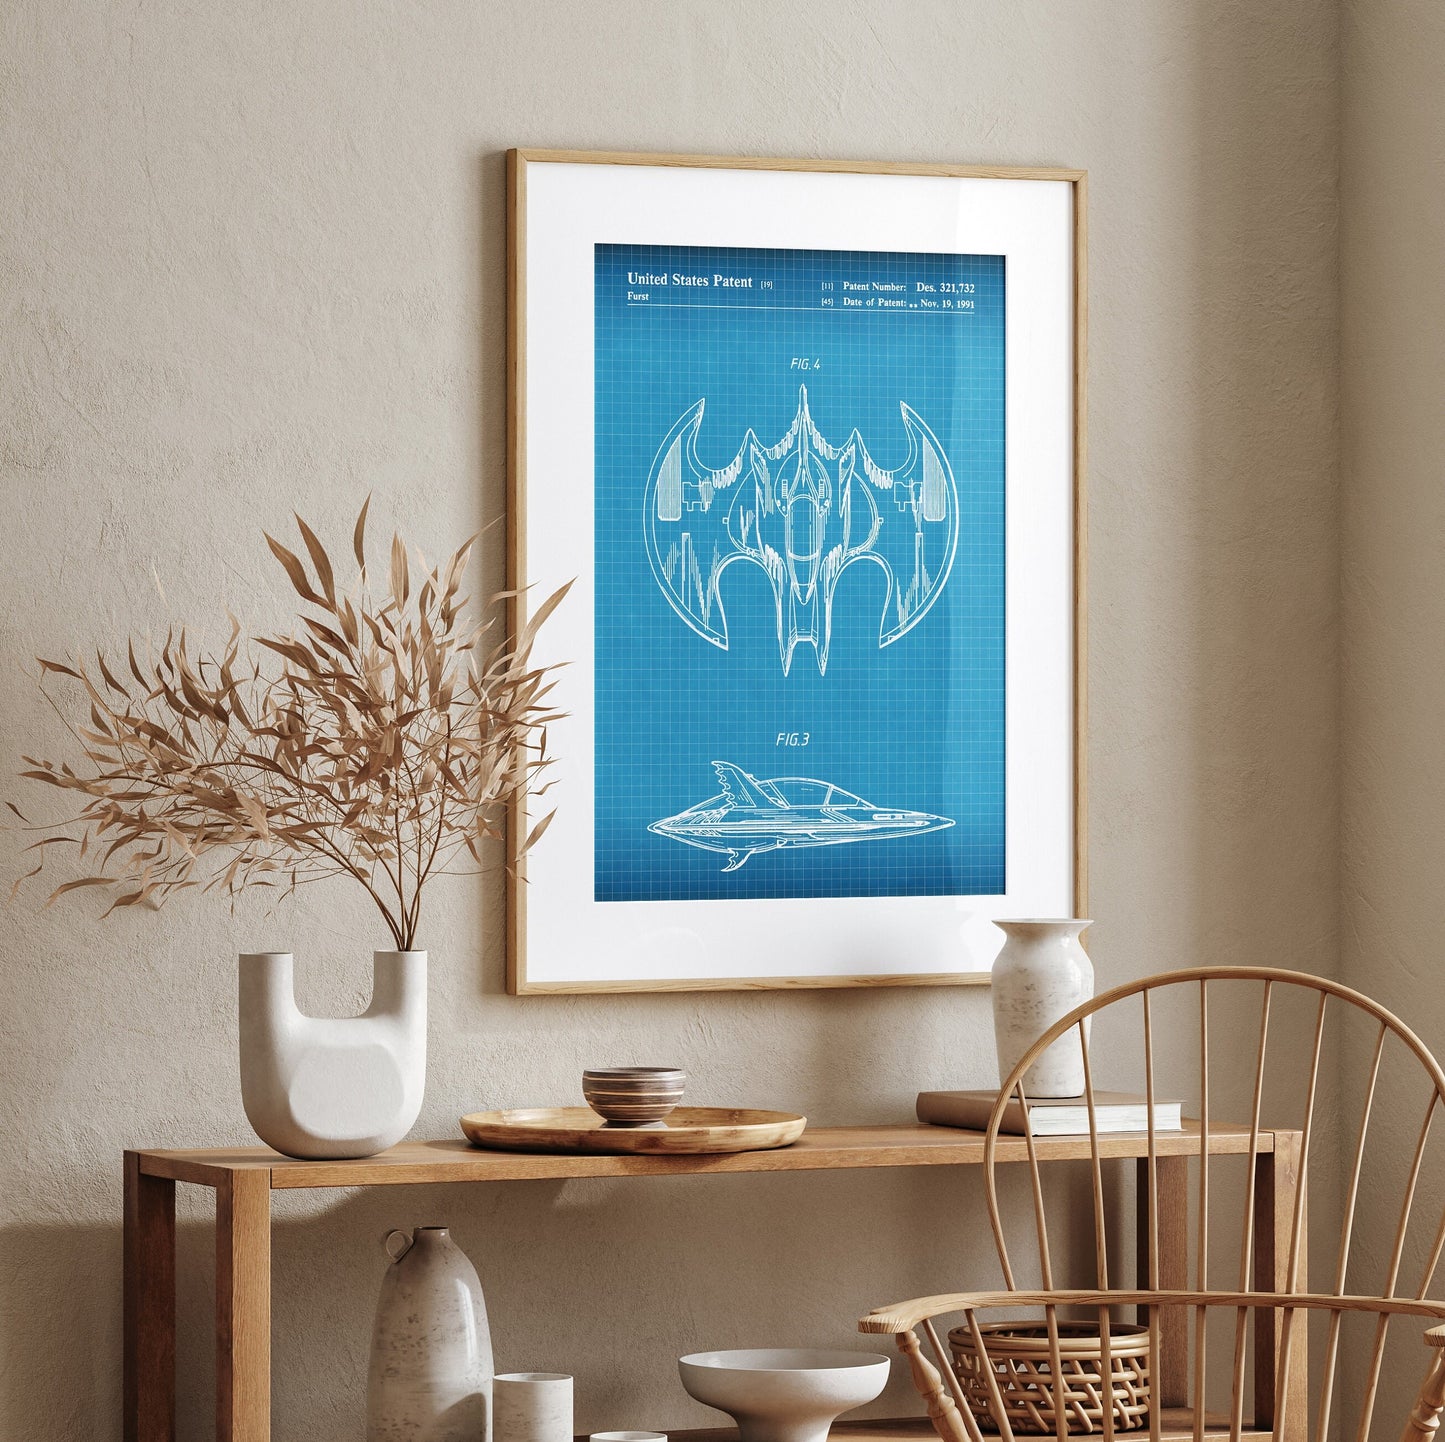 Batwing Patent Print - Magic Posters